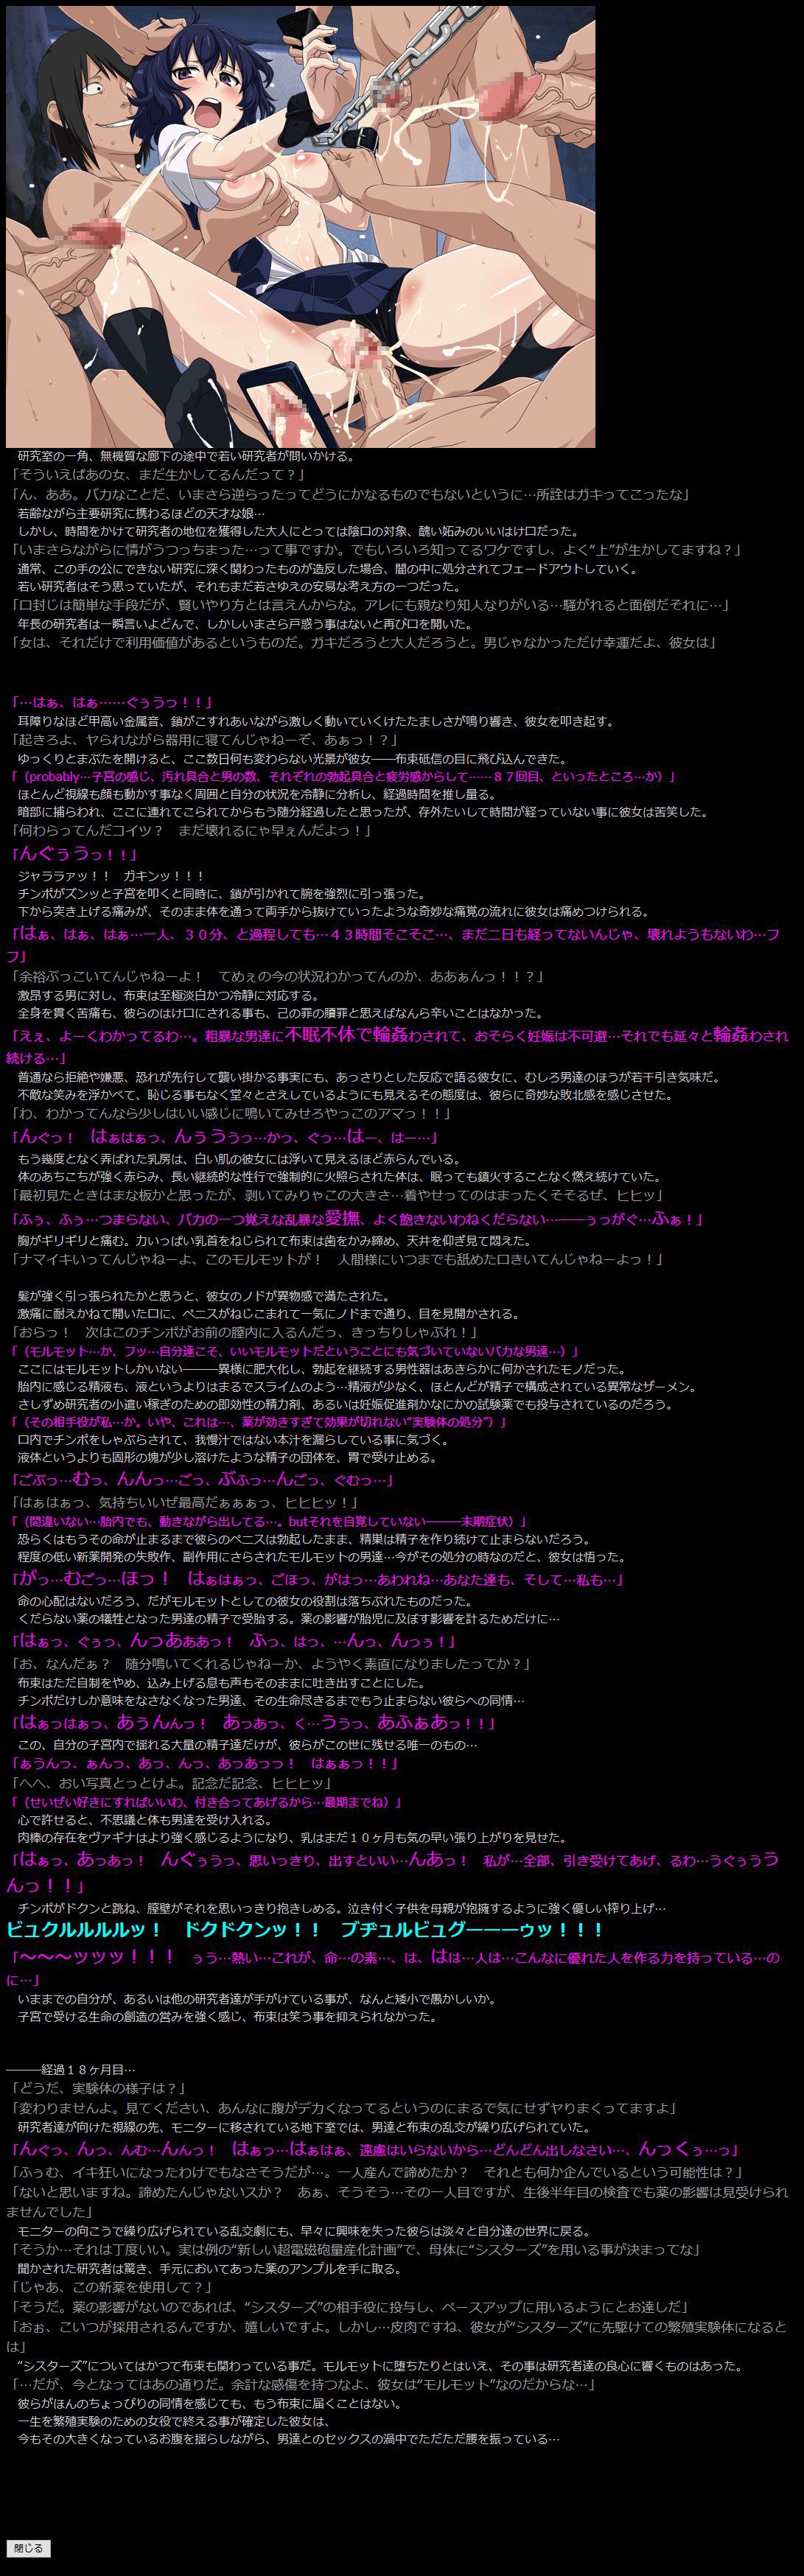 [LolitaChannel (Arigase Shinji)] Yuumei Chara Kannou Shousetsu CG Shuu No. 263!! Toaru Kagaku no Railgun S HaaHaa CG Shuu (Toaru Kagaku no Railgun S) [LolitaChannel (ありがせしんじ)] 有名キャラ官能小説CG集 第263弾 とあ○科学の超電磁砲SはぁはぁCG集 (とある科学の超電磁砲S) 7